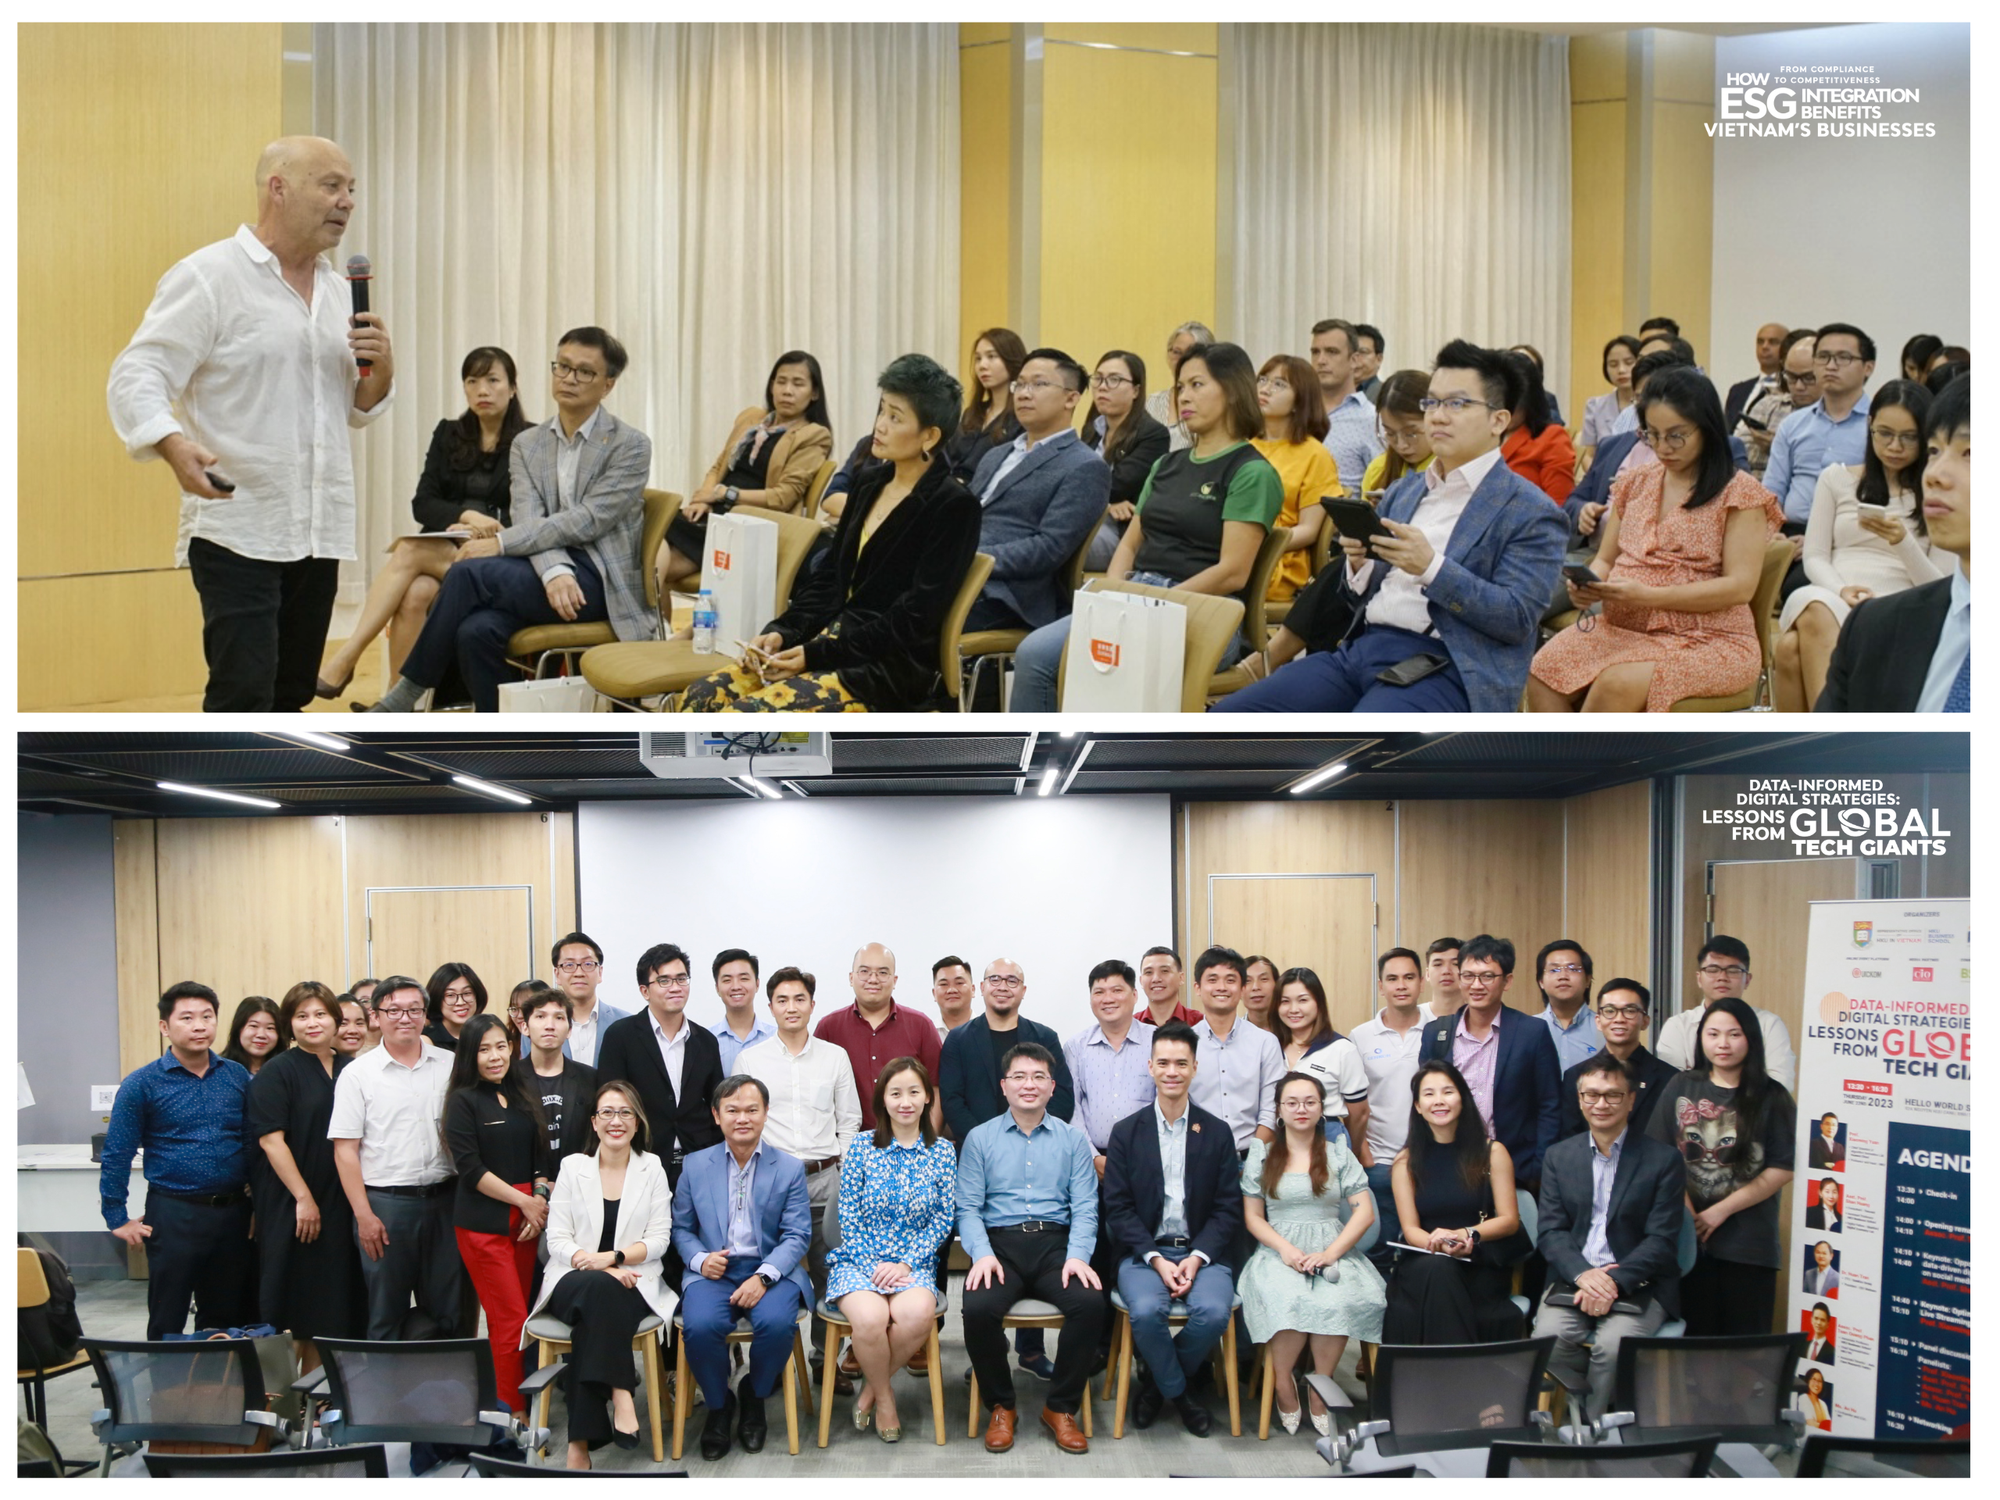 Đại học Hong Kong trao học bổng, thúc đẩy khởi nghiệp Việt Nam - Ảnh 3.